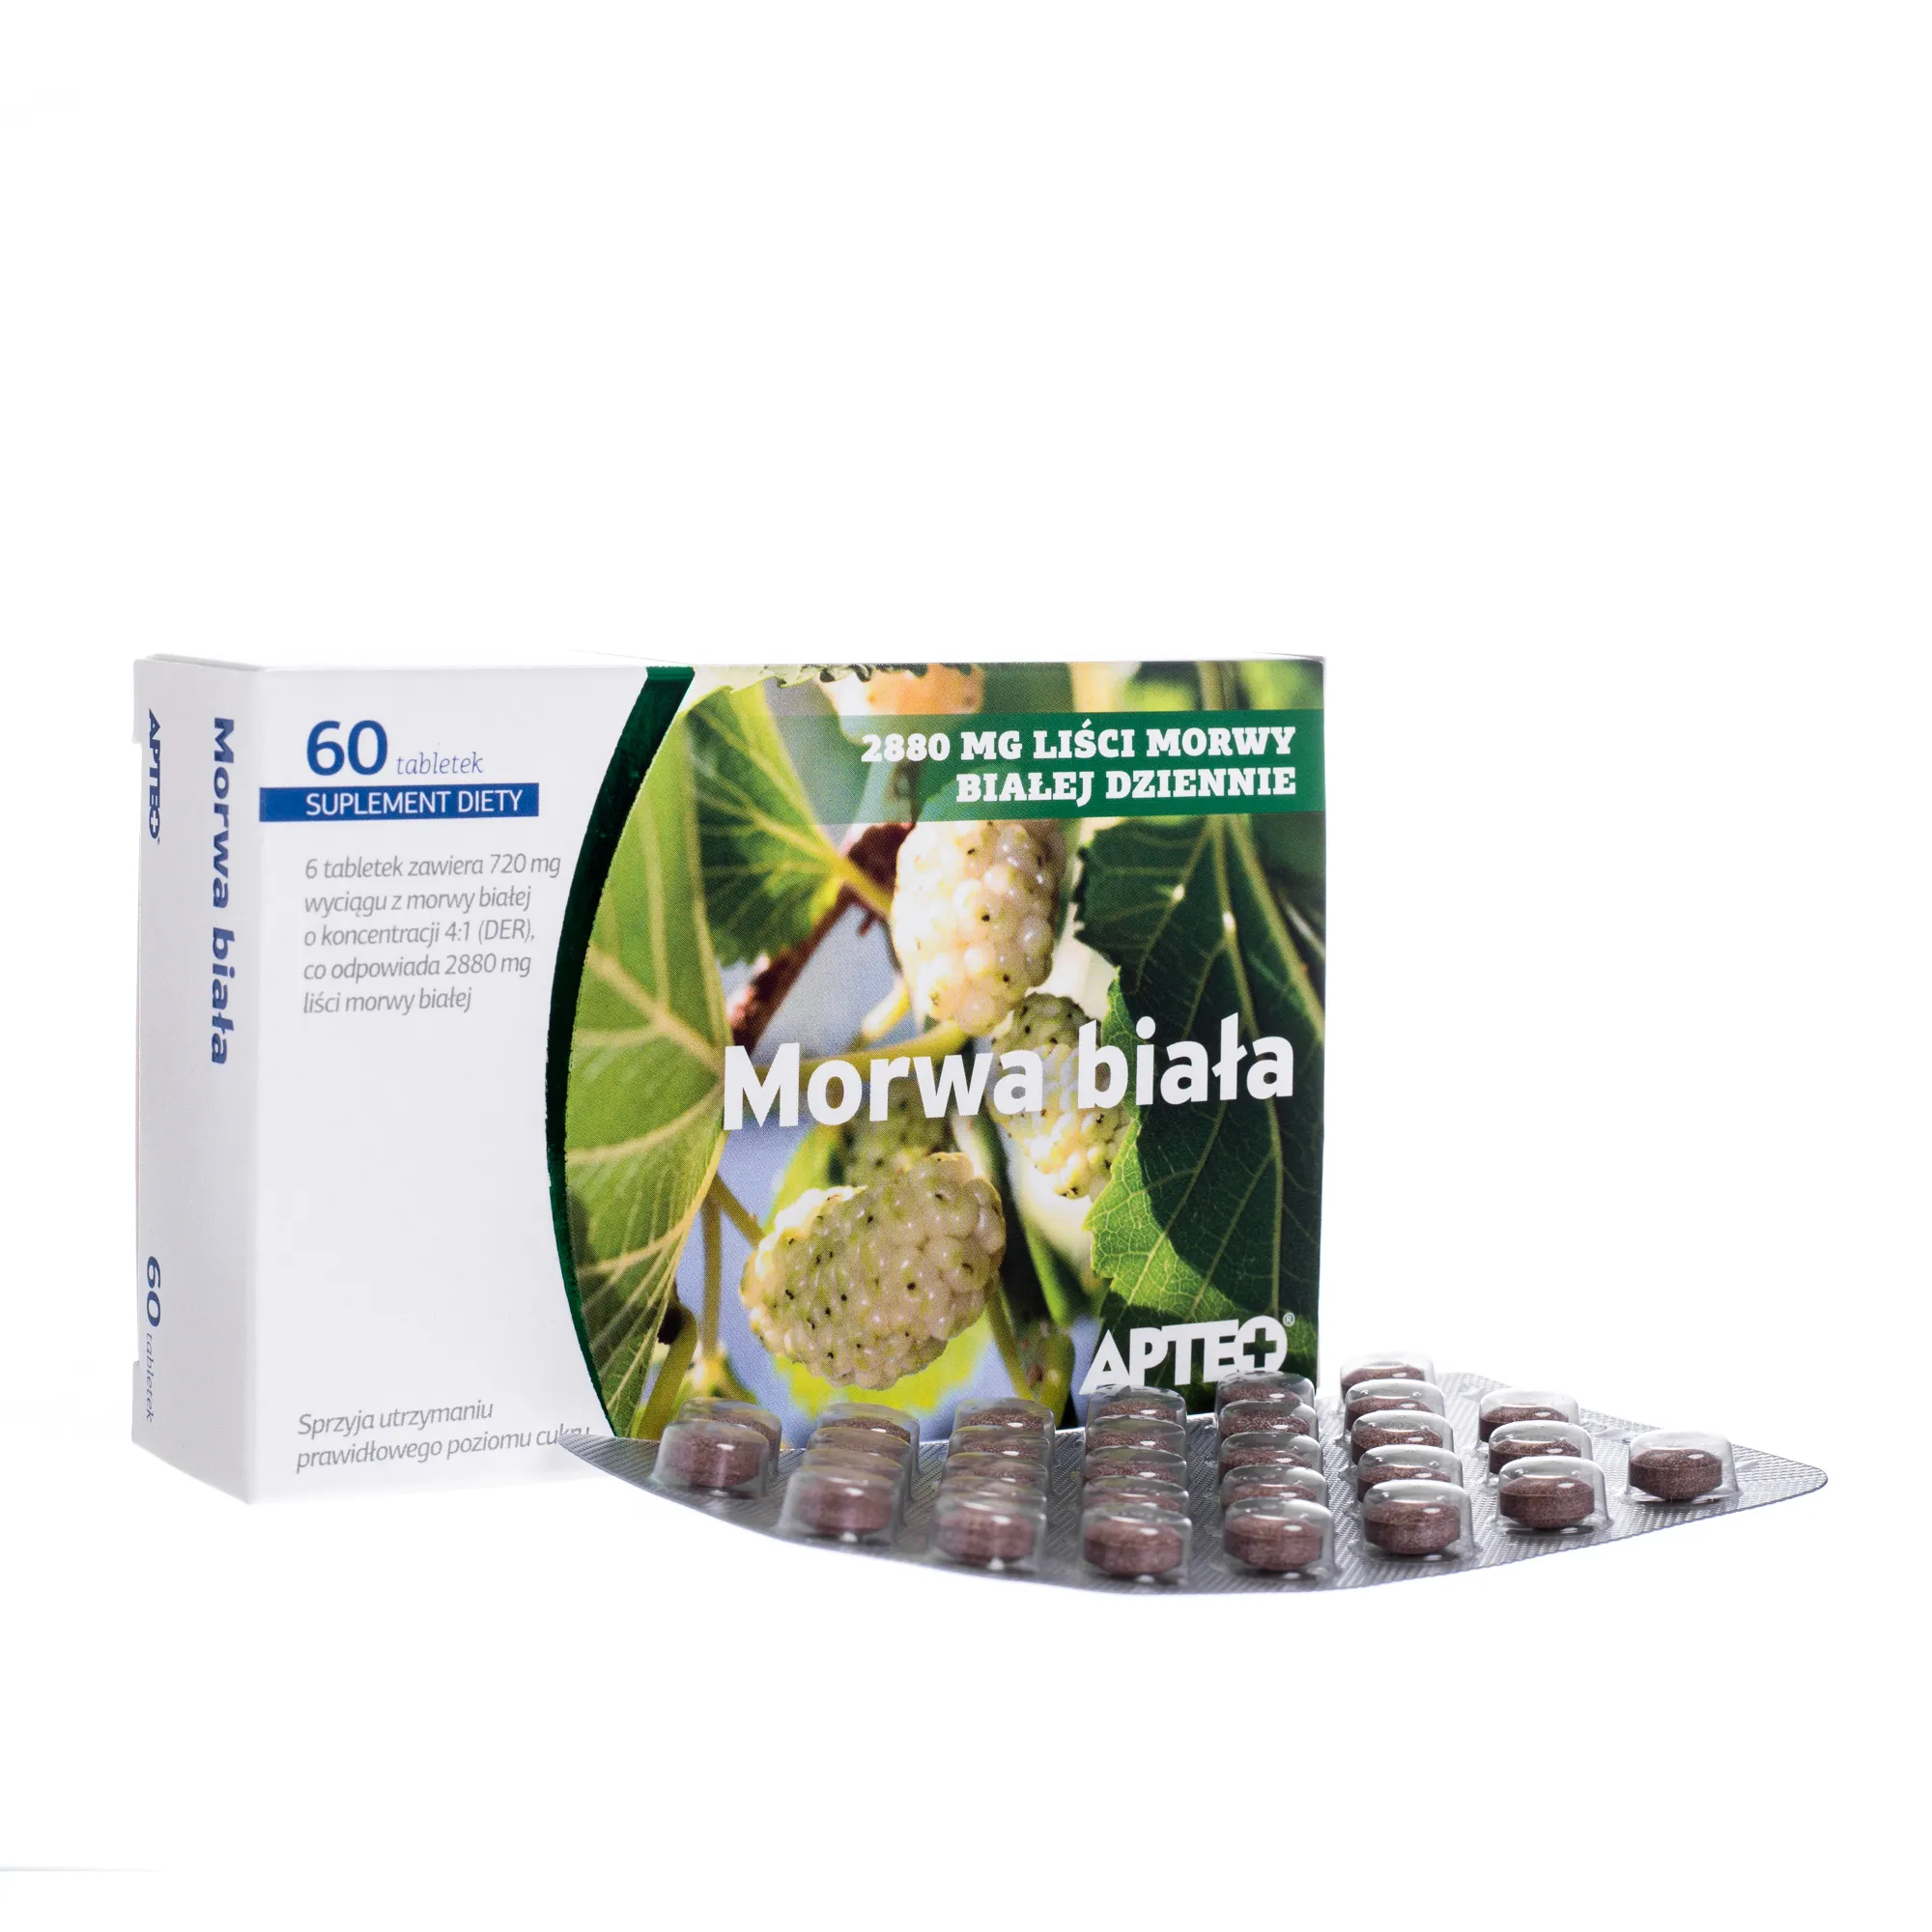 Morwa Biała Apteo, suplement diety, 60 tabletek